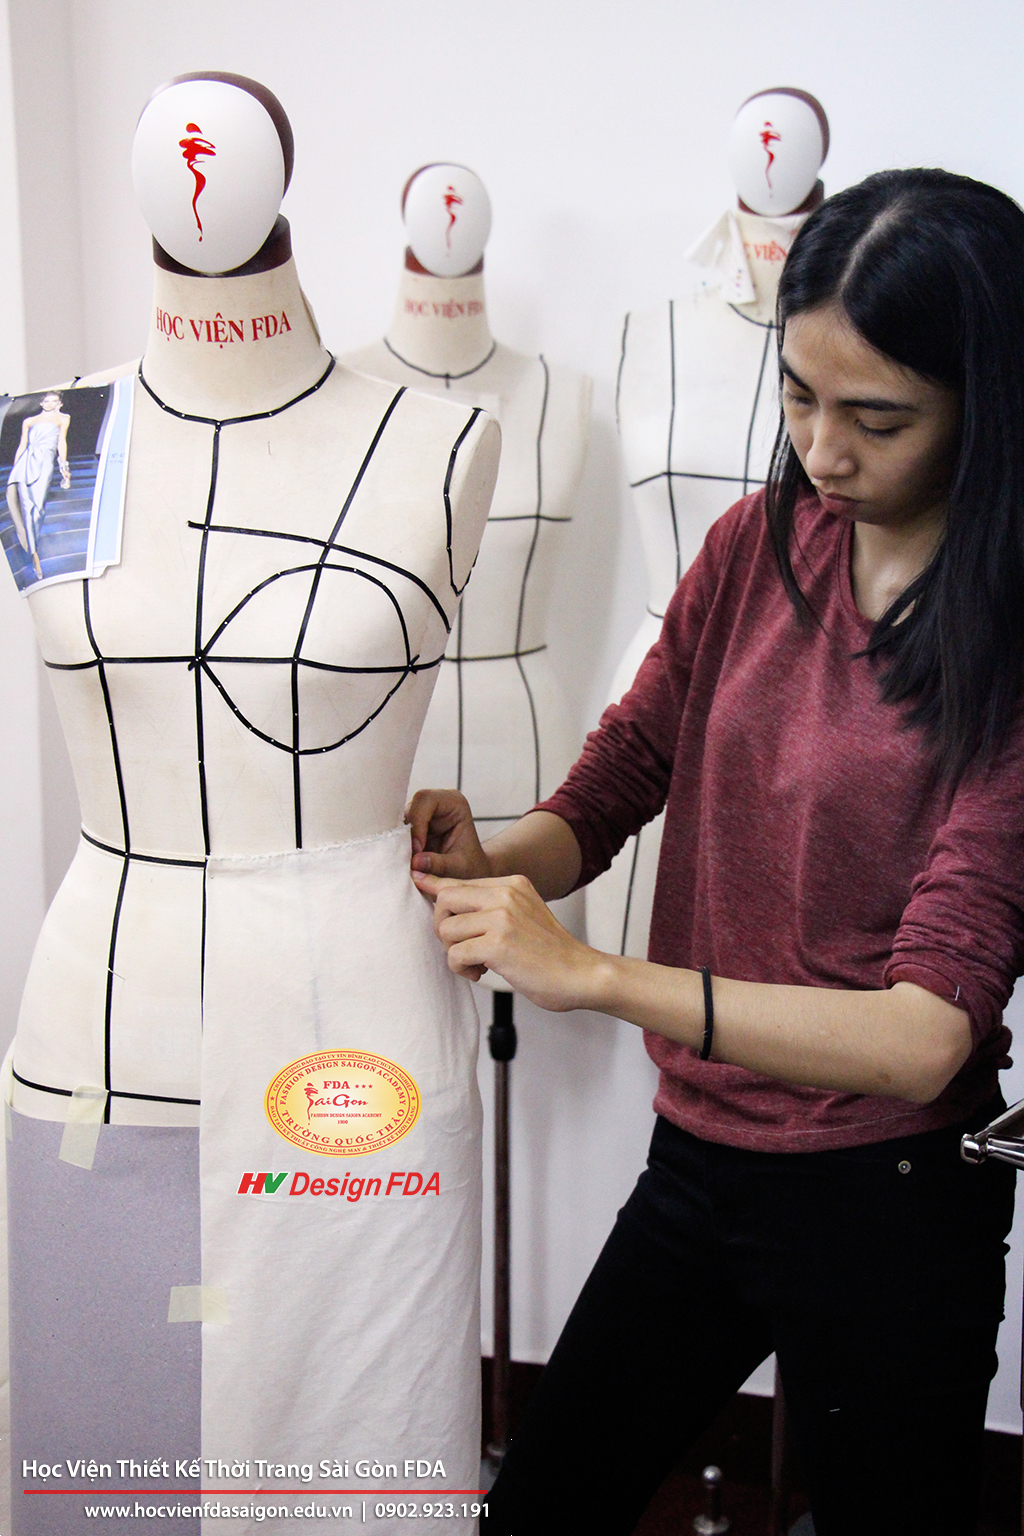 Fashion draping Thiết kế rập thời trang 3D trên Mannequin